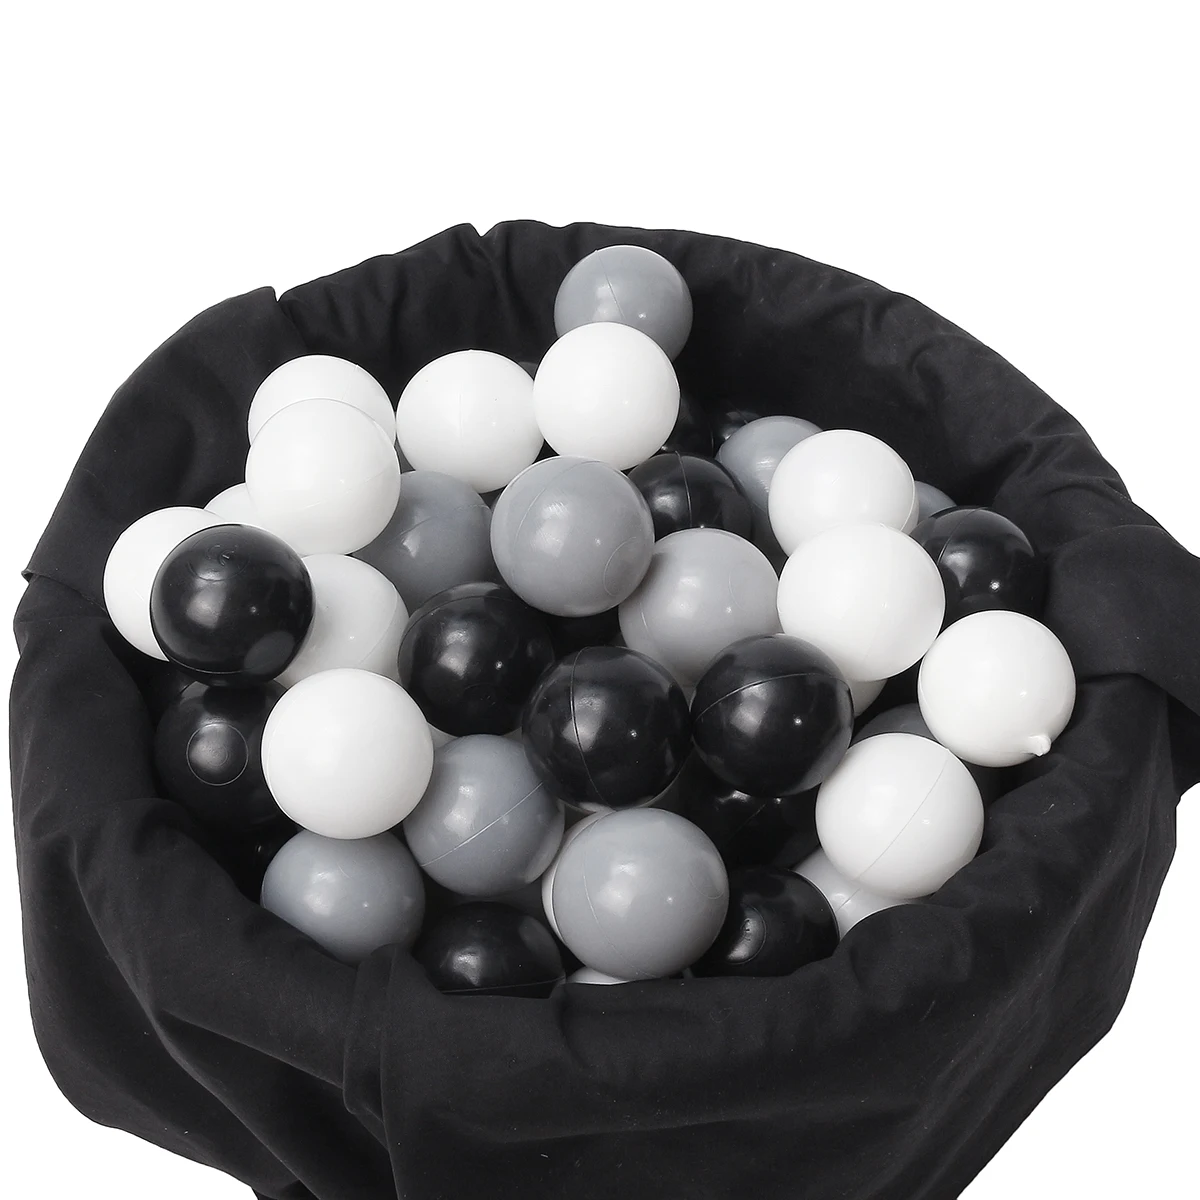 150 шт Детские антистрессовые морские шарики безопасные пластиковые черно-серые белые шарики забавные детские плавающие игрушки для бассейна воды океанские волнистые шарики 5,5 см